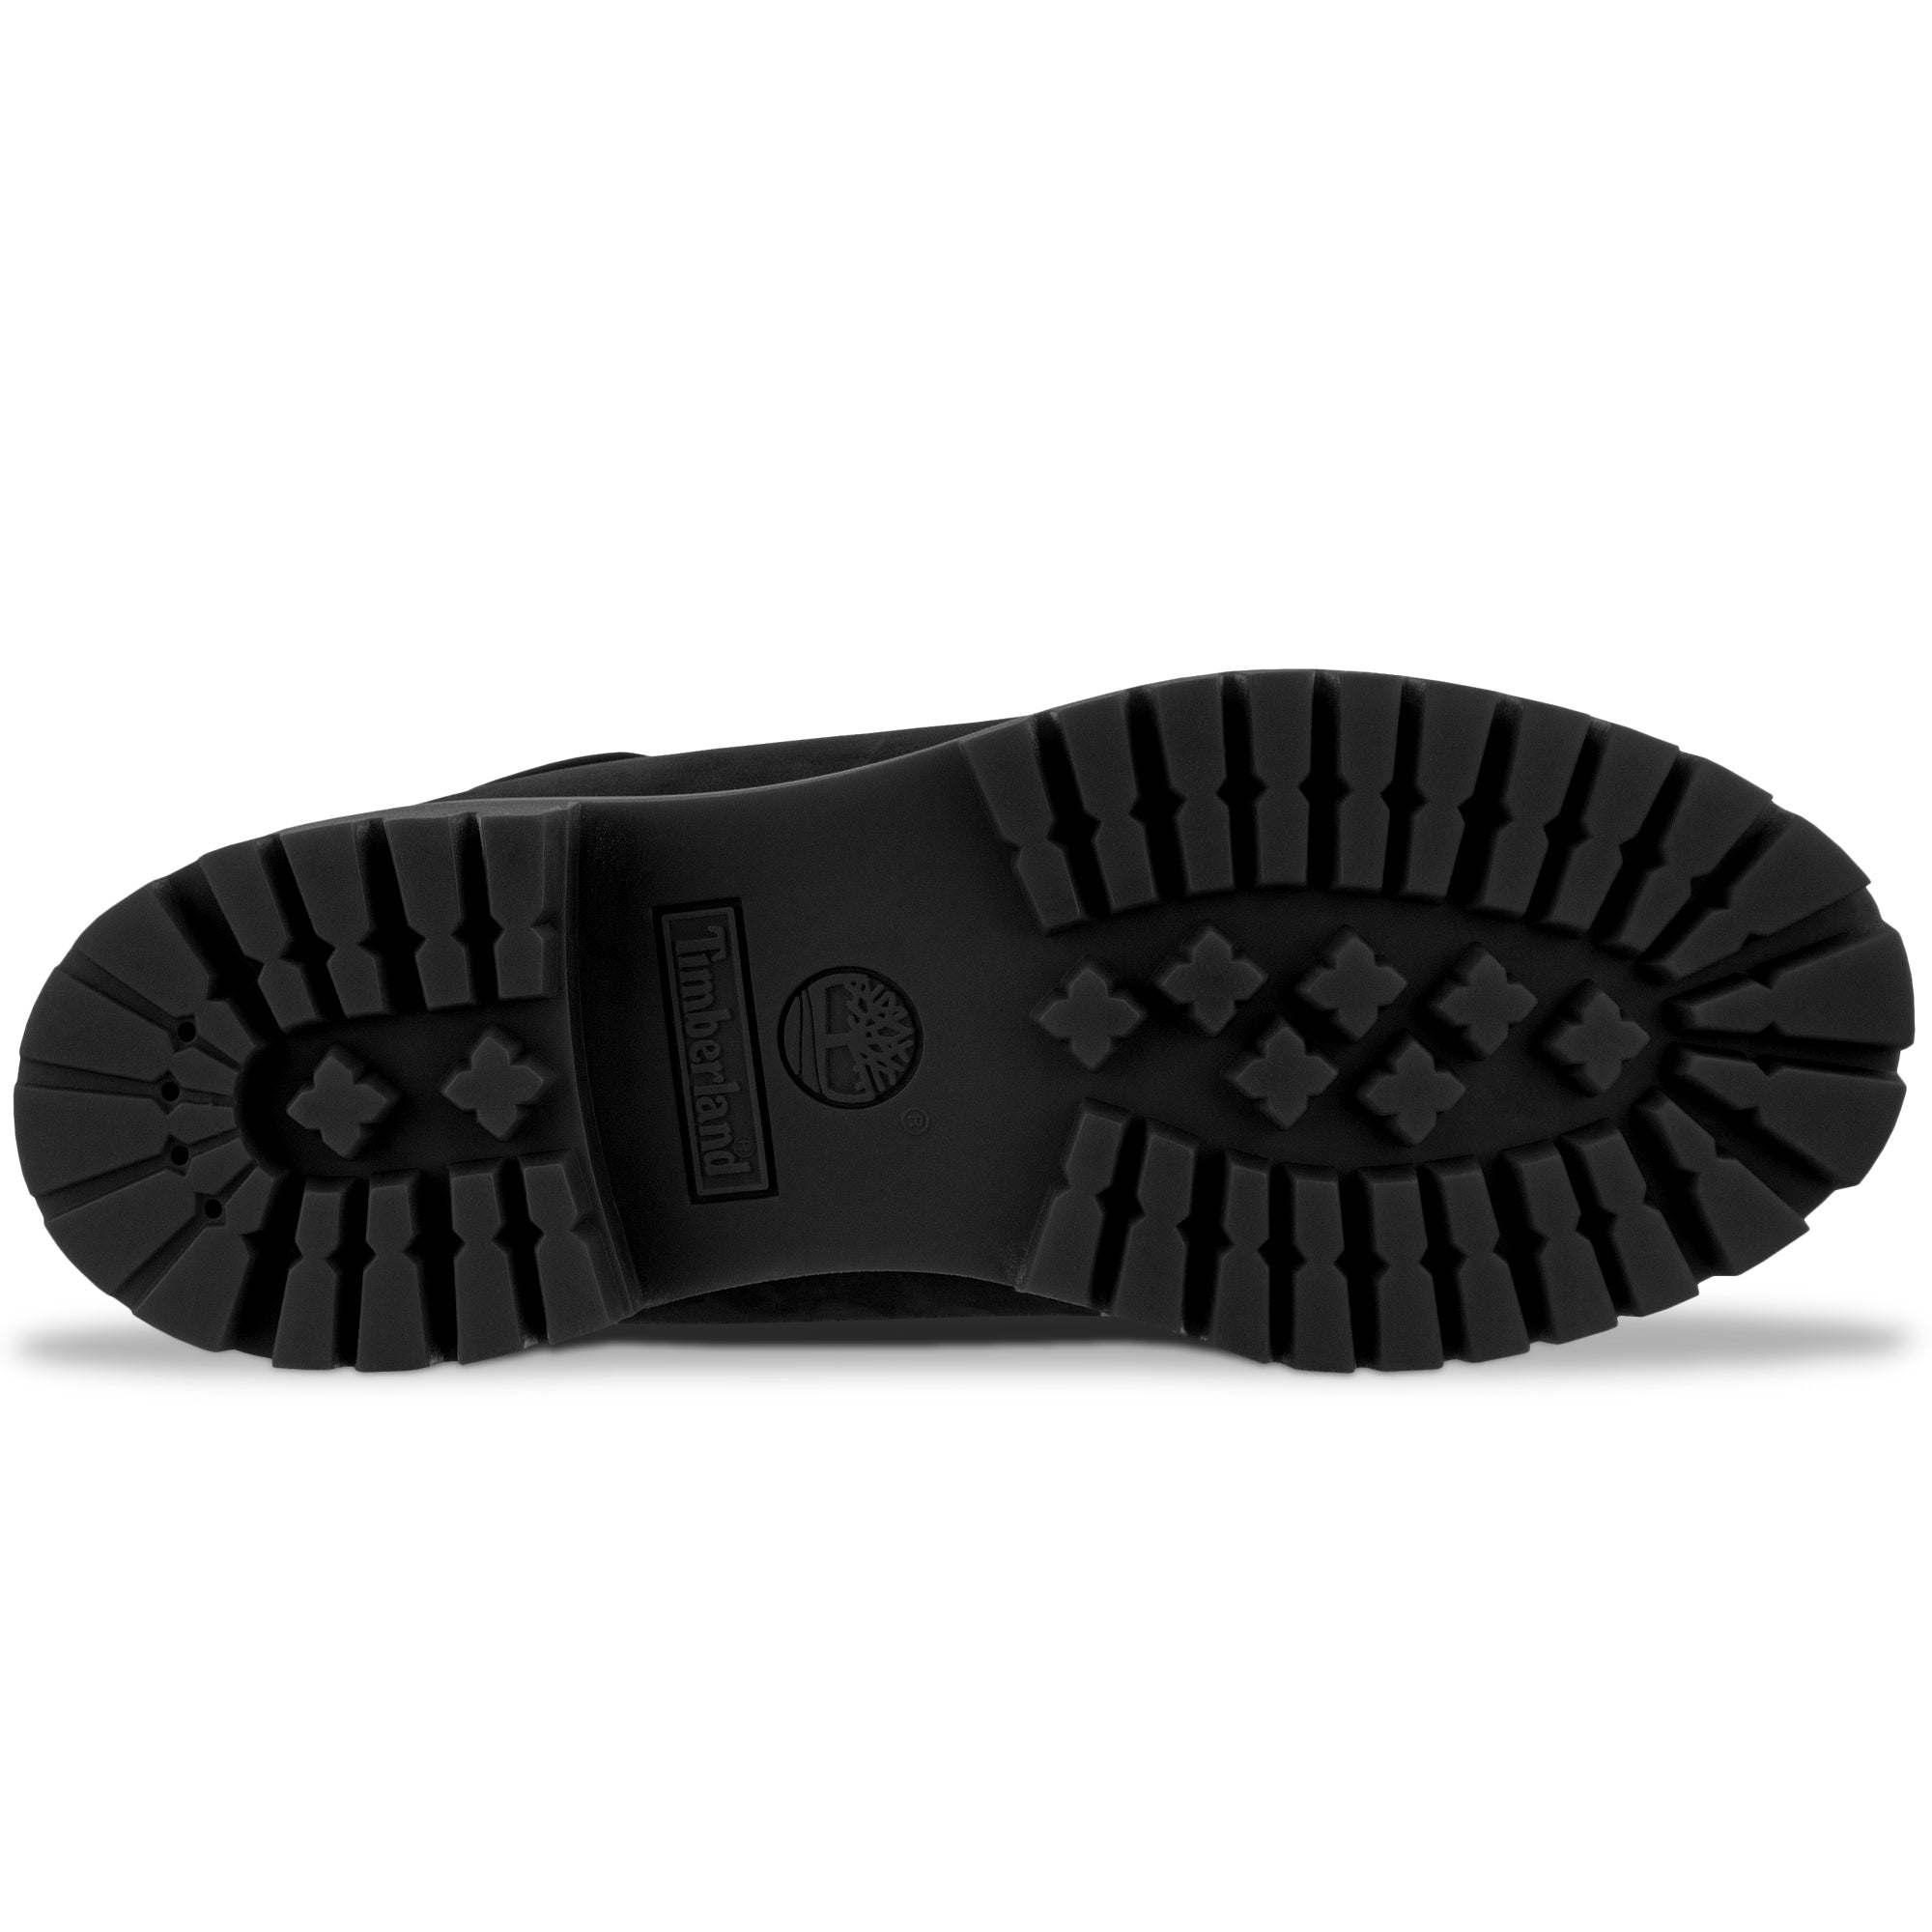 Timberland Premium Waterproof 6 Inch Boot - Black Nubuck